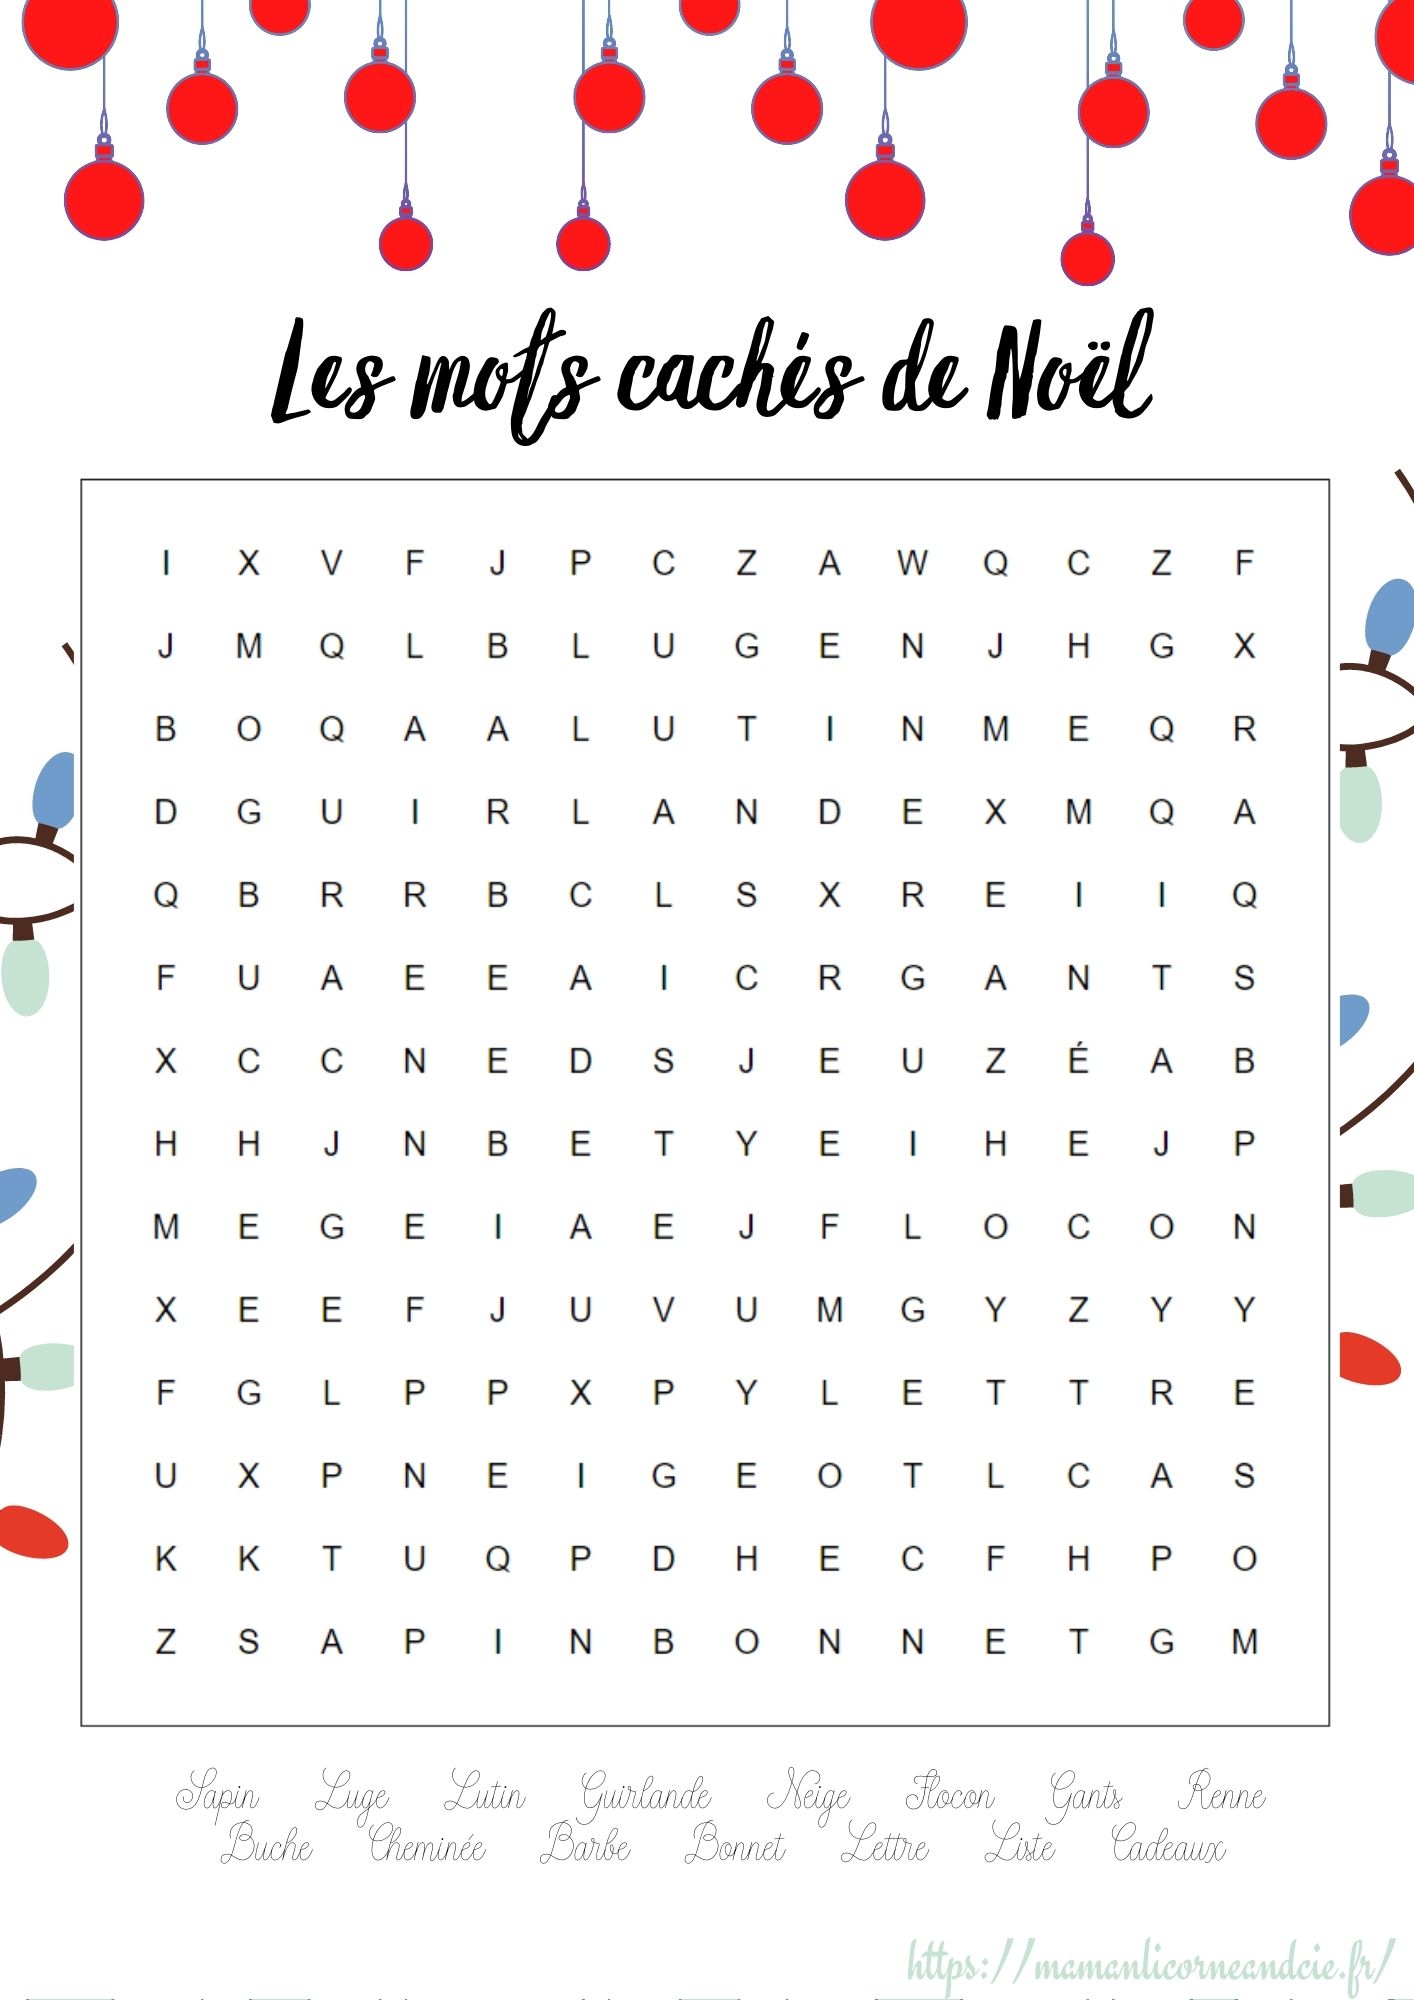 https://mademoisellejoyce.fr/jeux-et-activites-de-noel-pour-enfants/les-mots-caches-de-noel-2/